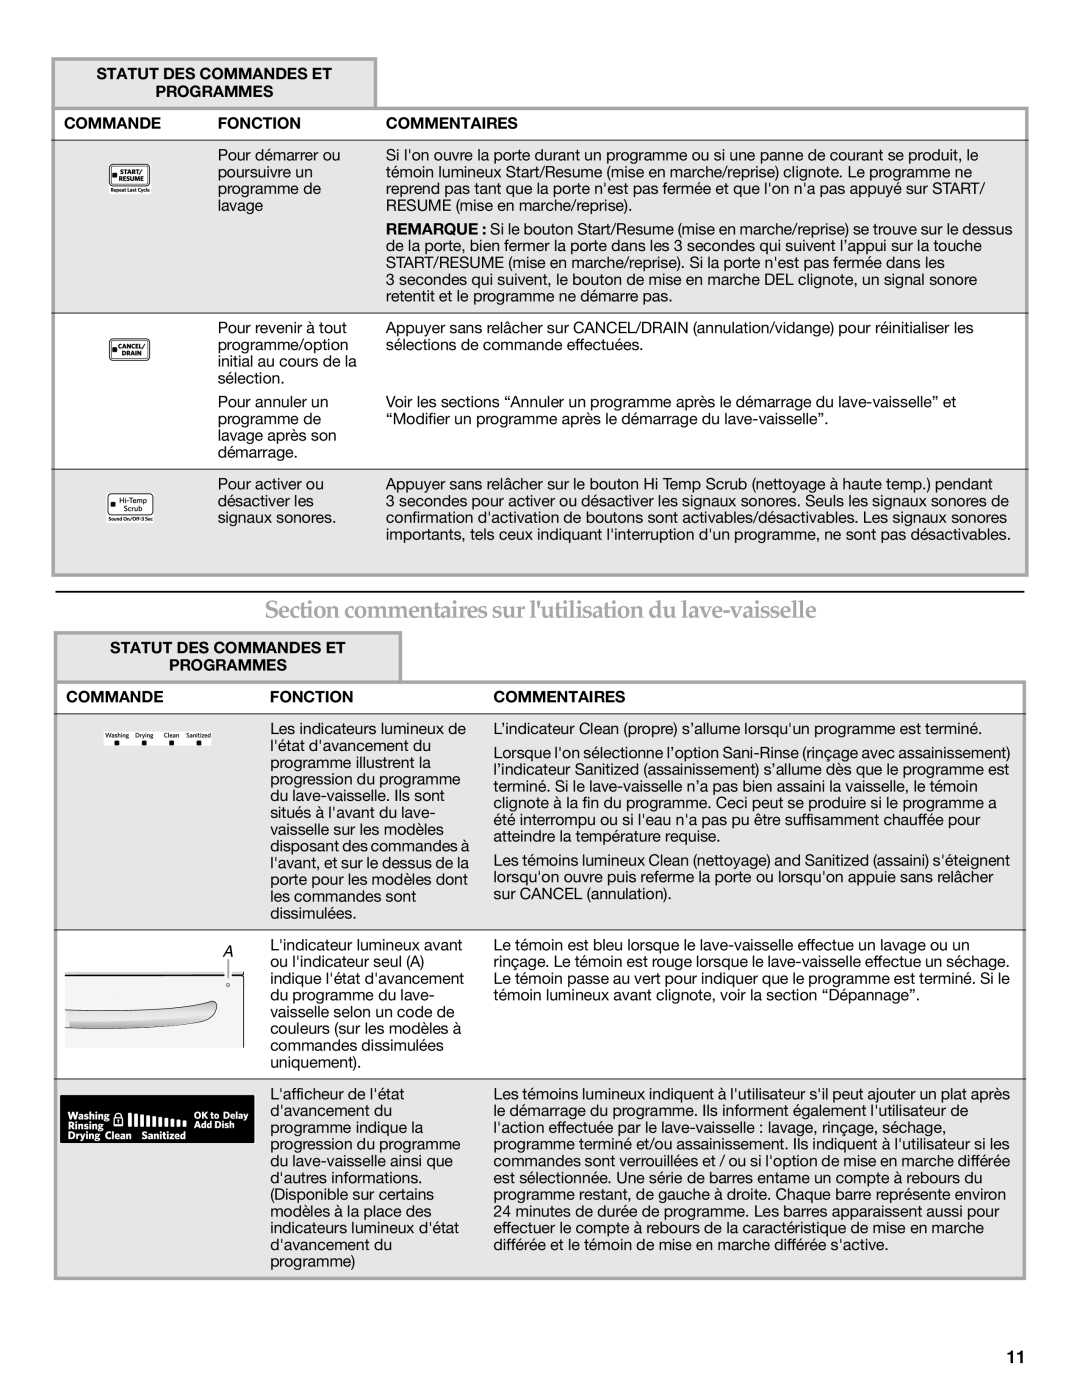 Whirlpool W10300929B warranty Statut Des Commandes Et Programmes, Fonction, Commentaires 